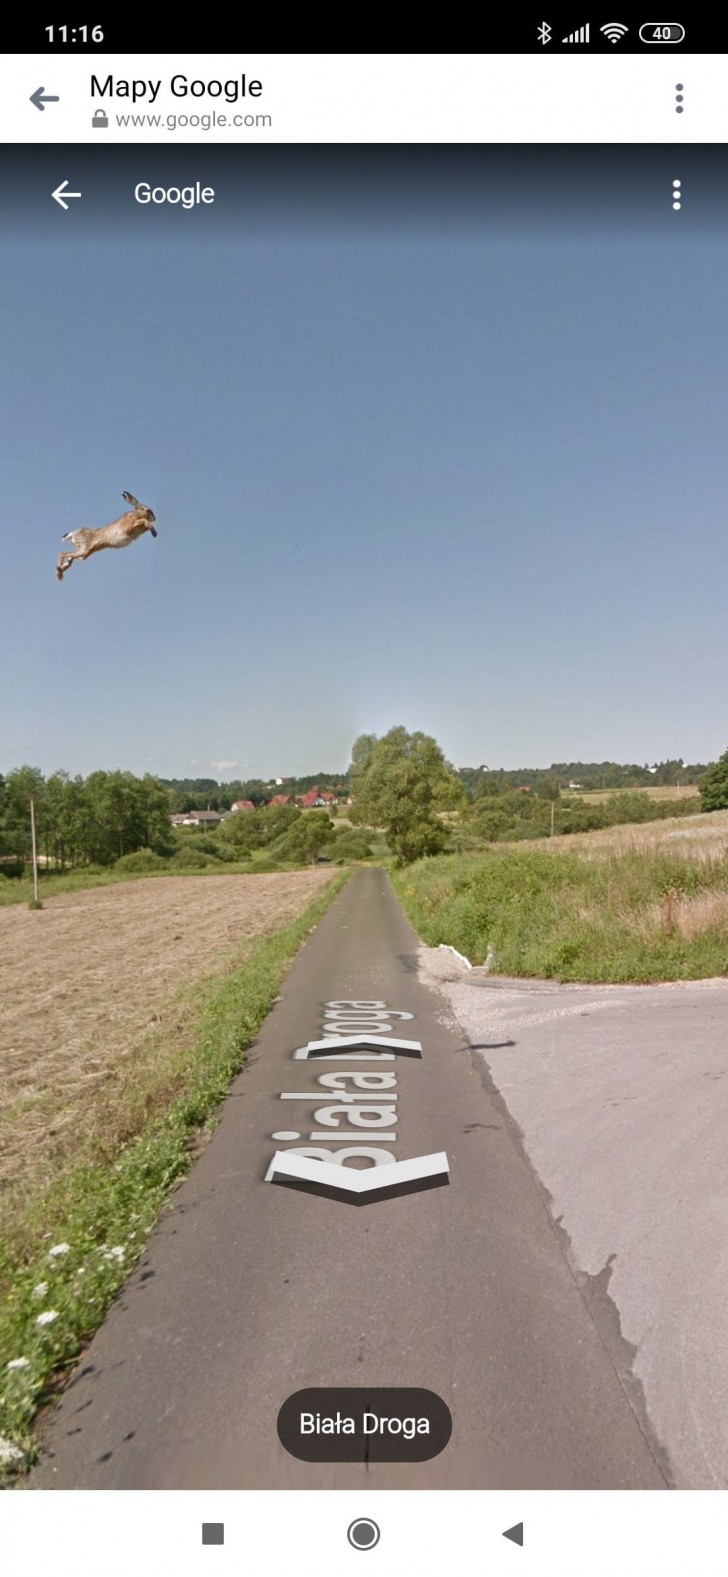 6. Wanneer Google Street View in direct contact komt met de wilde dieren!